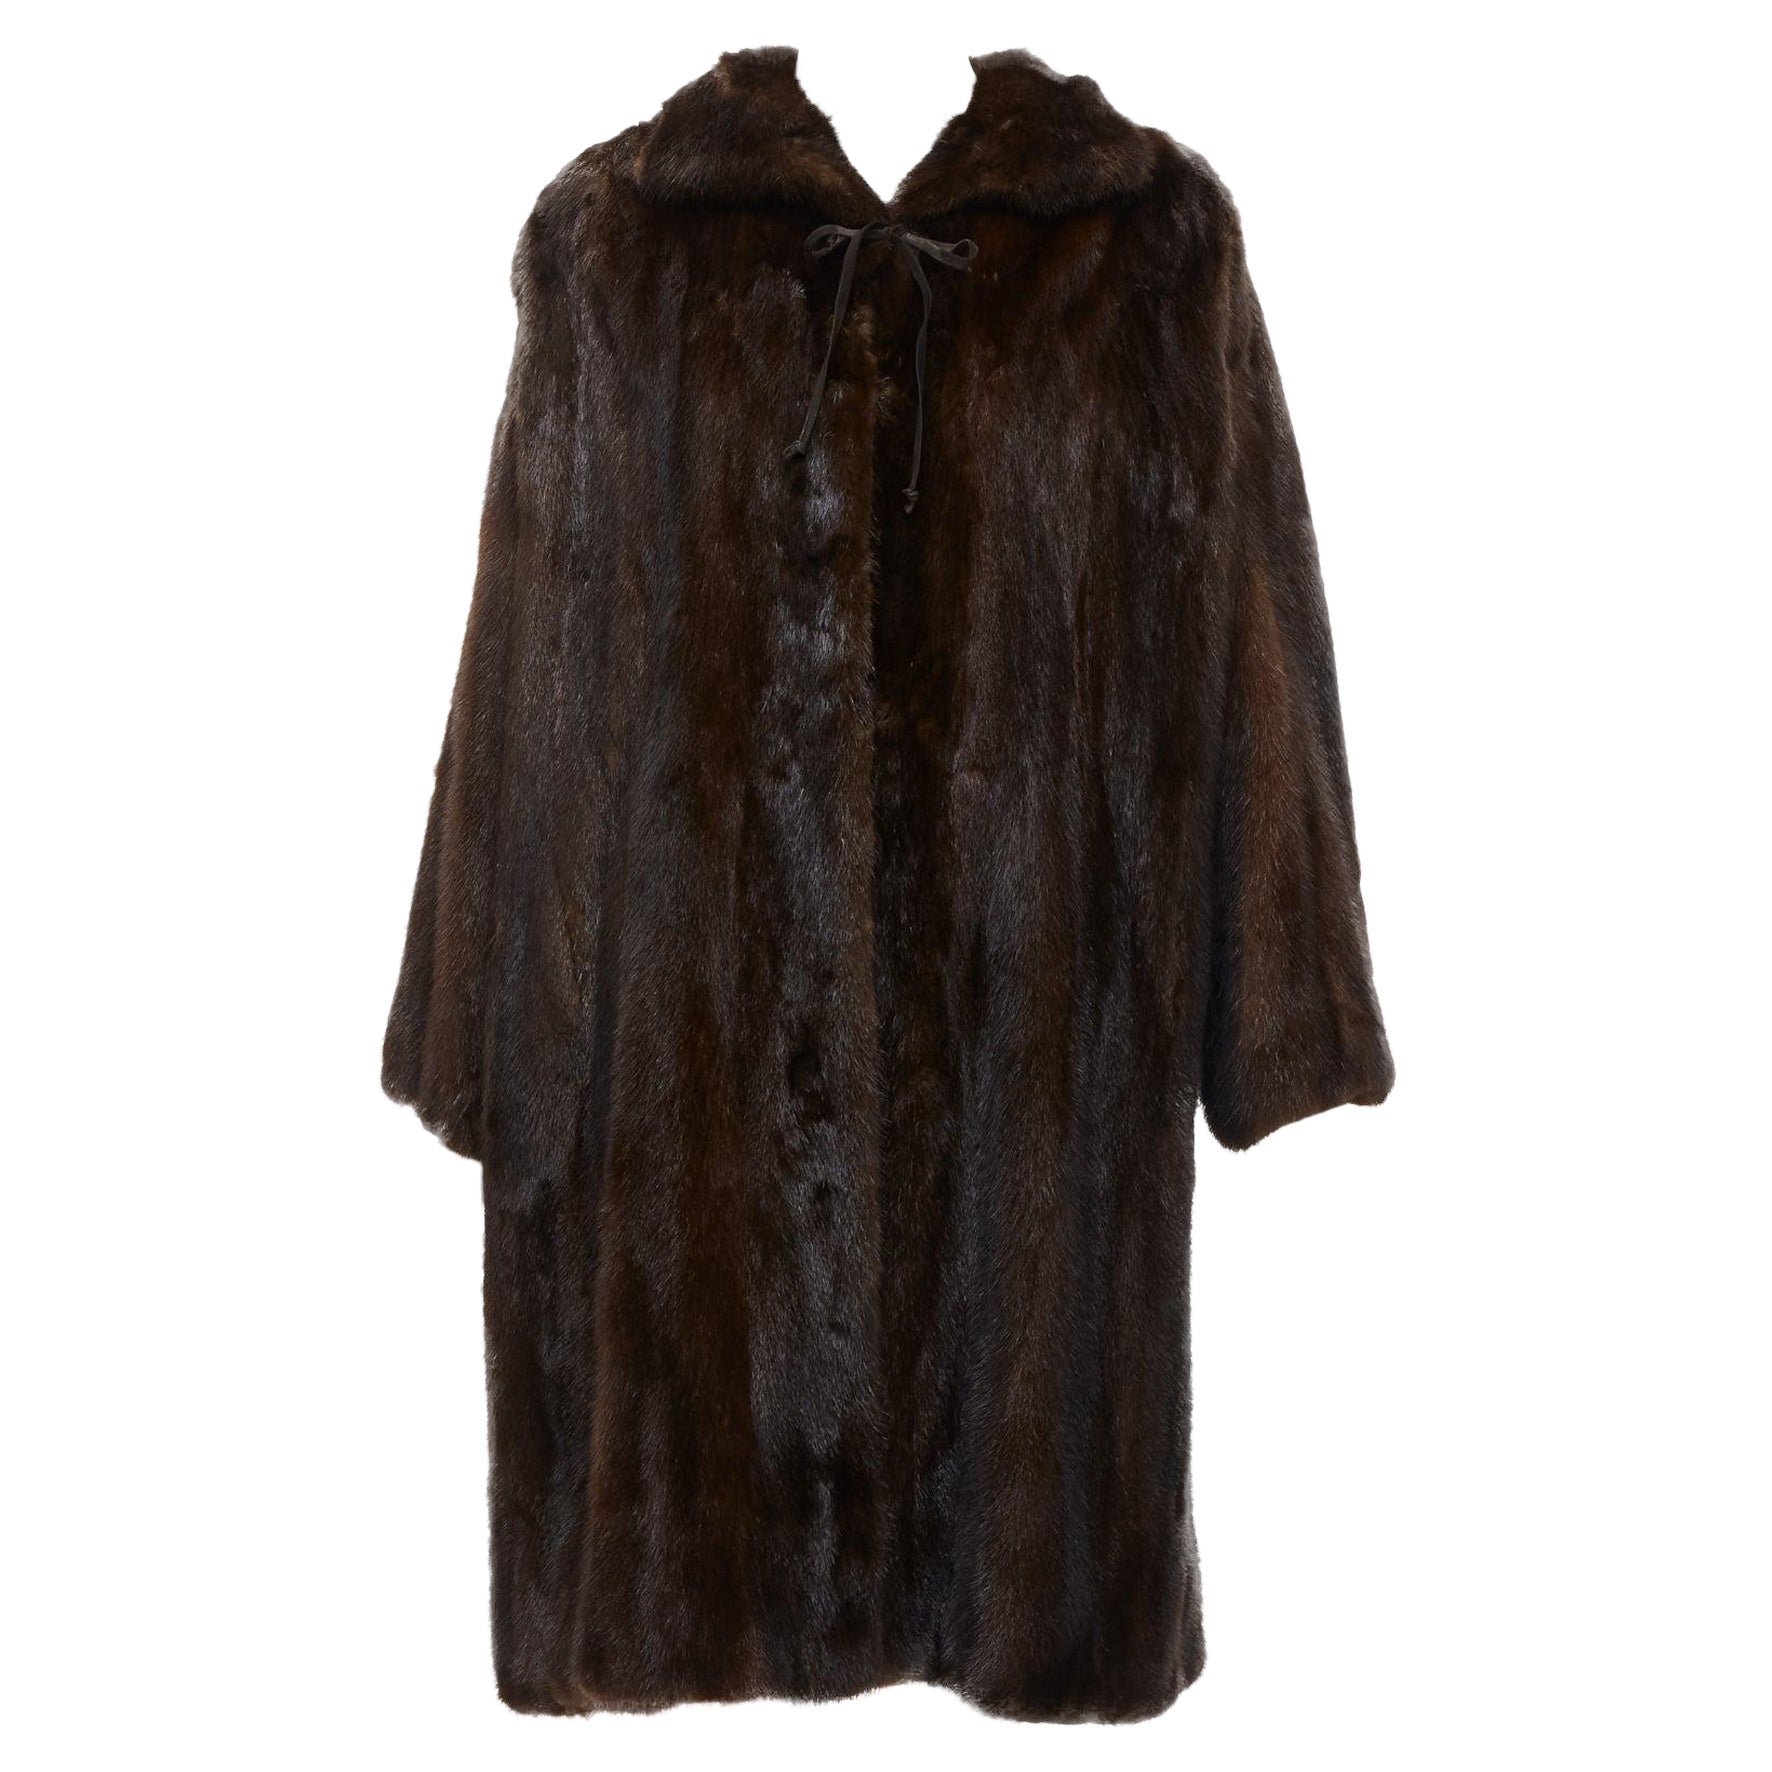 UNLABELLED dark brown genuine fur tie collar longline long sleeve jacket coat For Sale